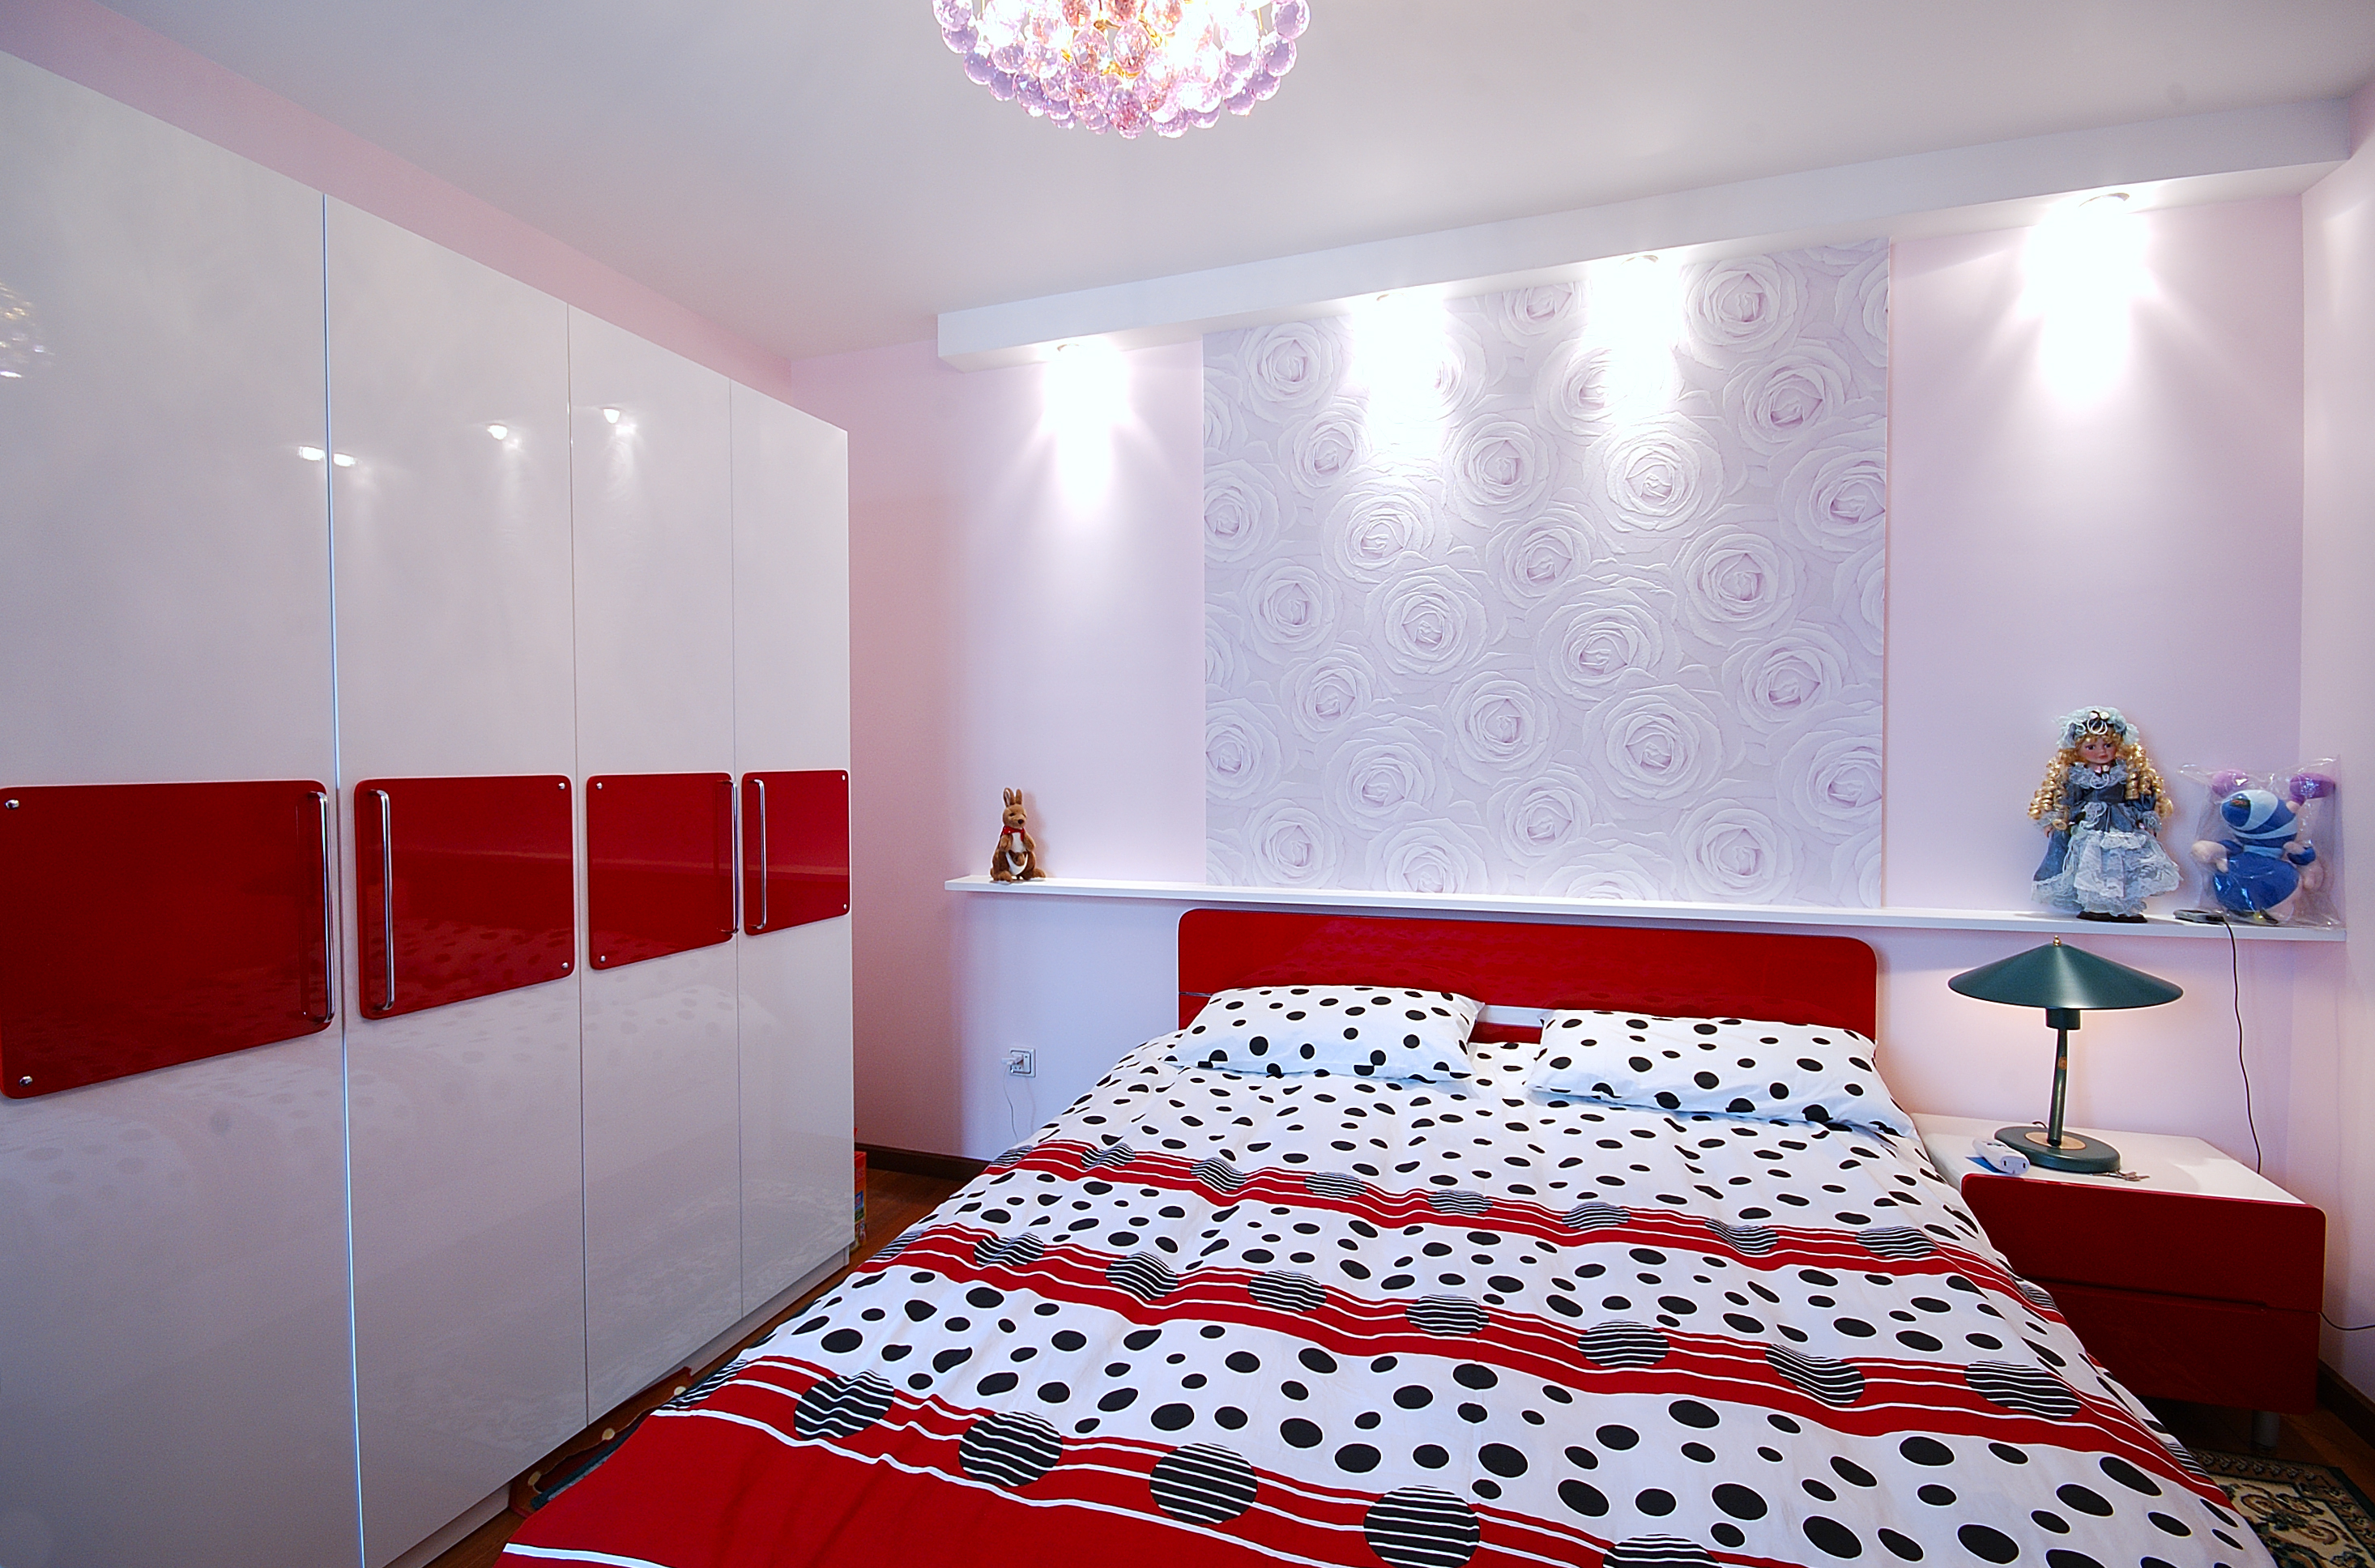 次卧的设计调皮而温馨，床头墙面的玫瑰花图案优雅而低调。